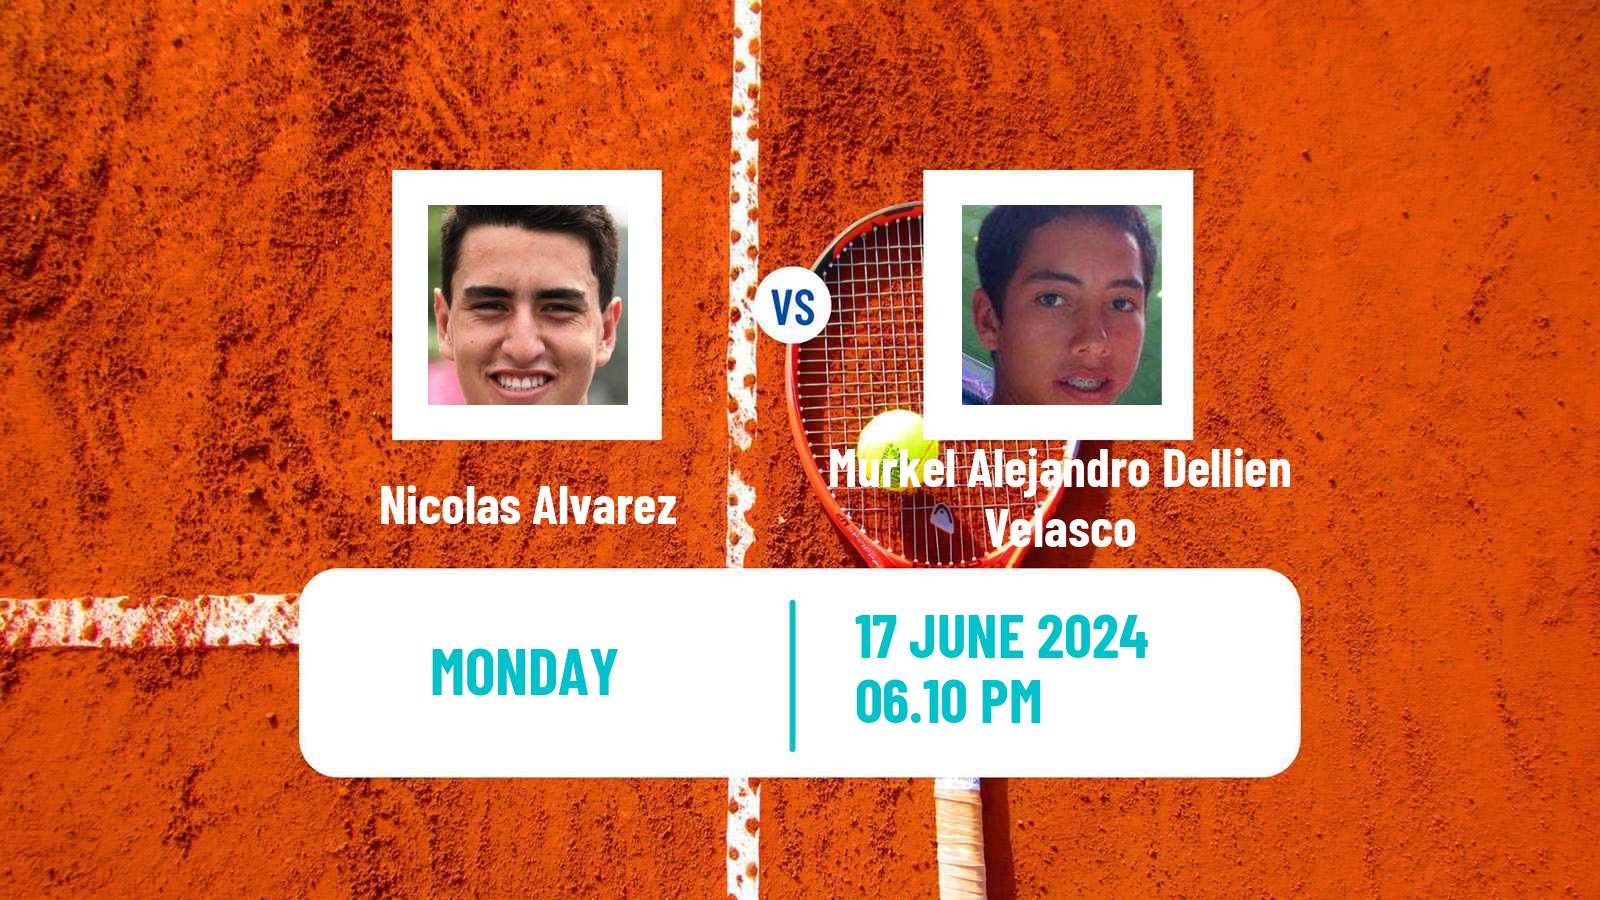 Tennis Santa Cruz 2 Challenger Men Nicolas Alvarez - Murkel Alejandro Dellien Velasco